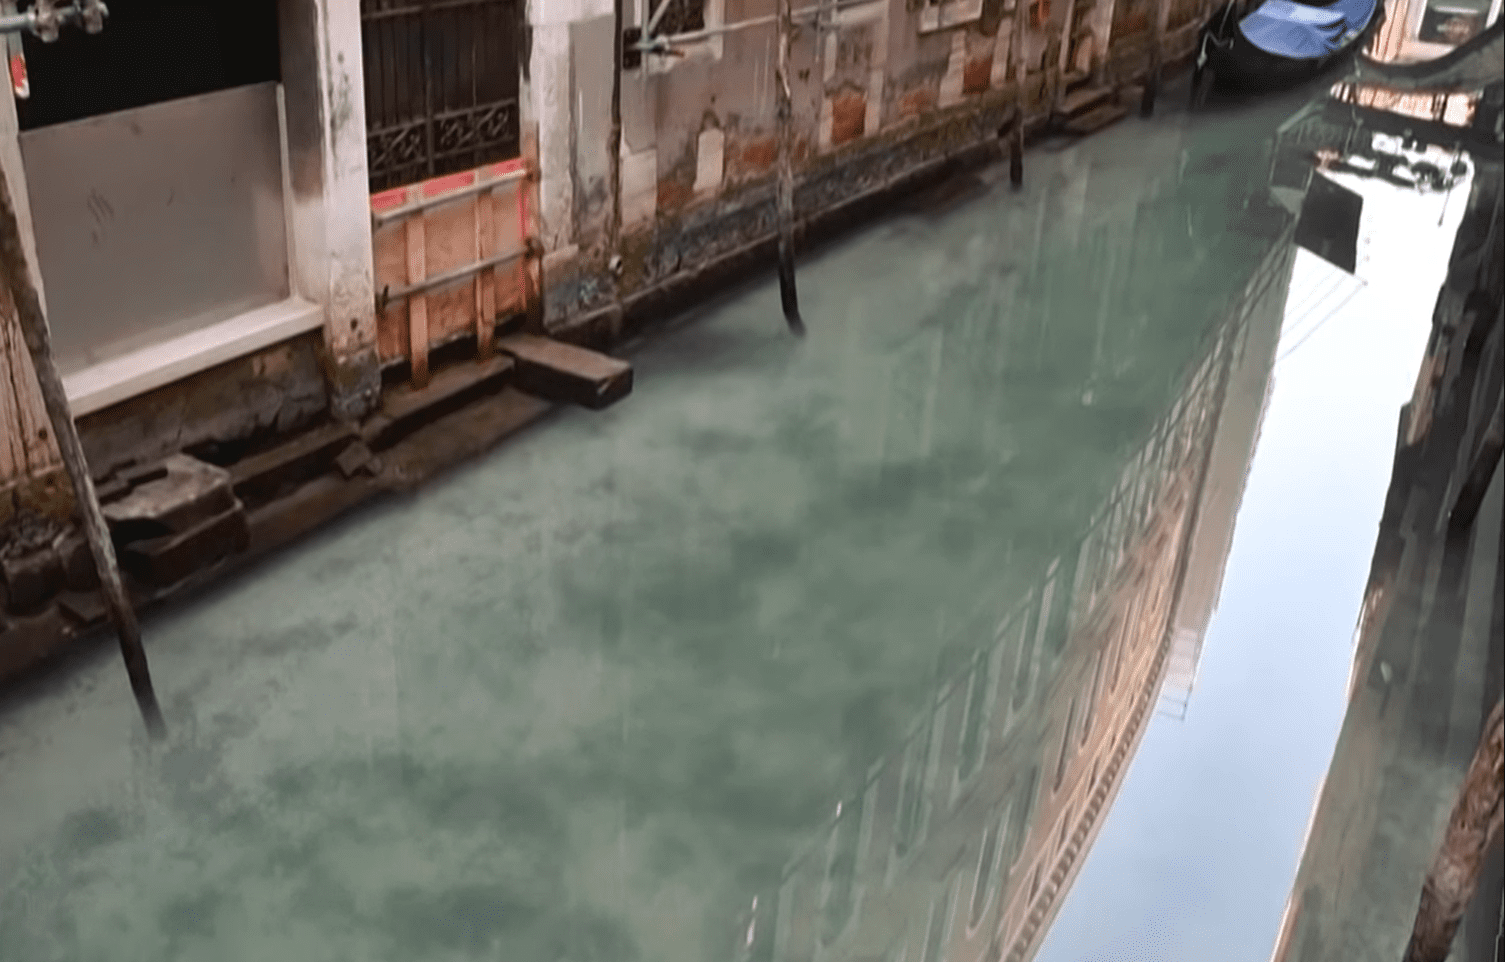 Aguas transparentes en los canales de Venecia, marzo 2020 | Foto: Youtube/RT en español